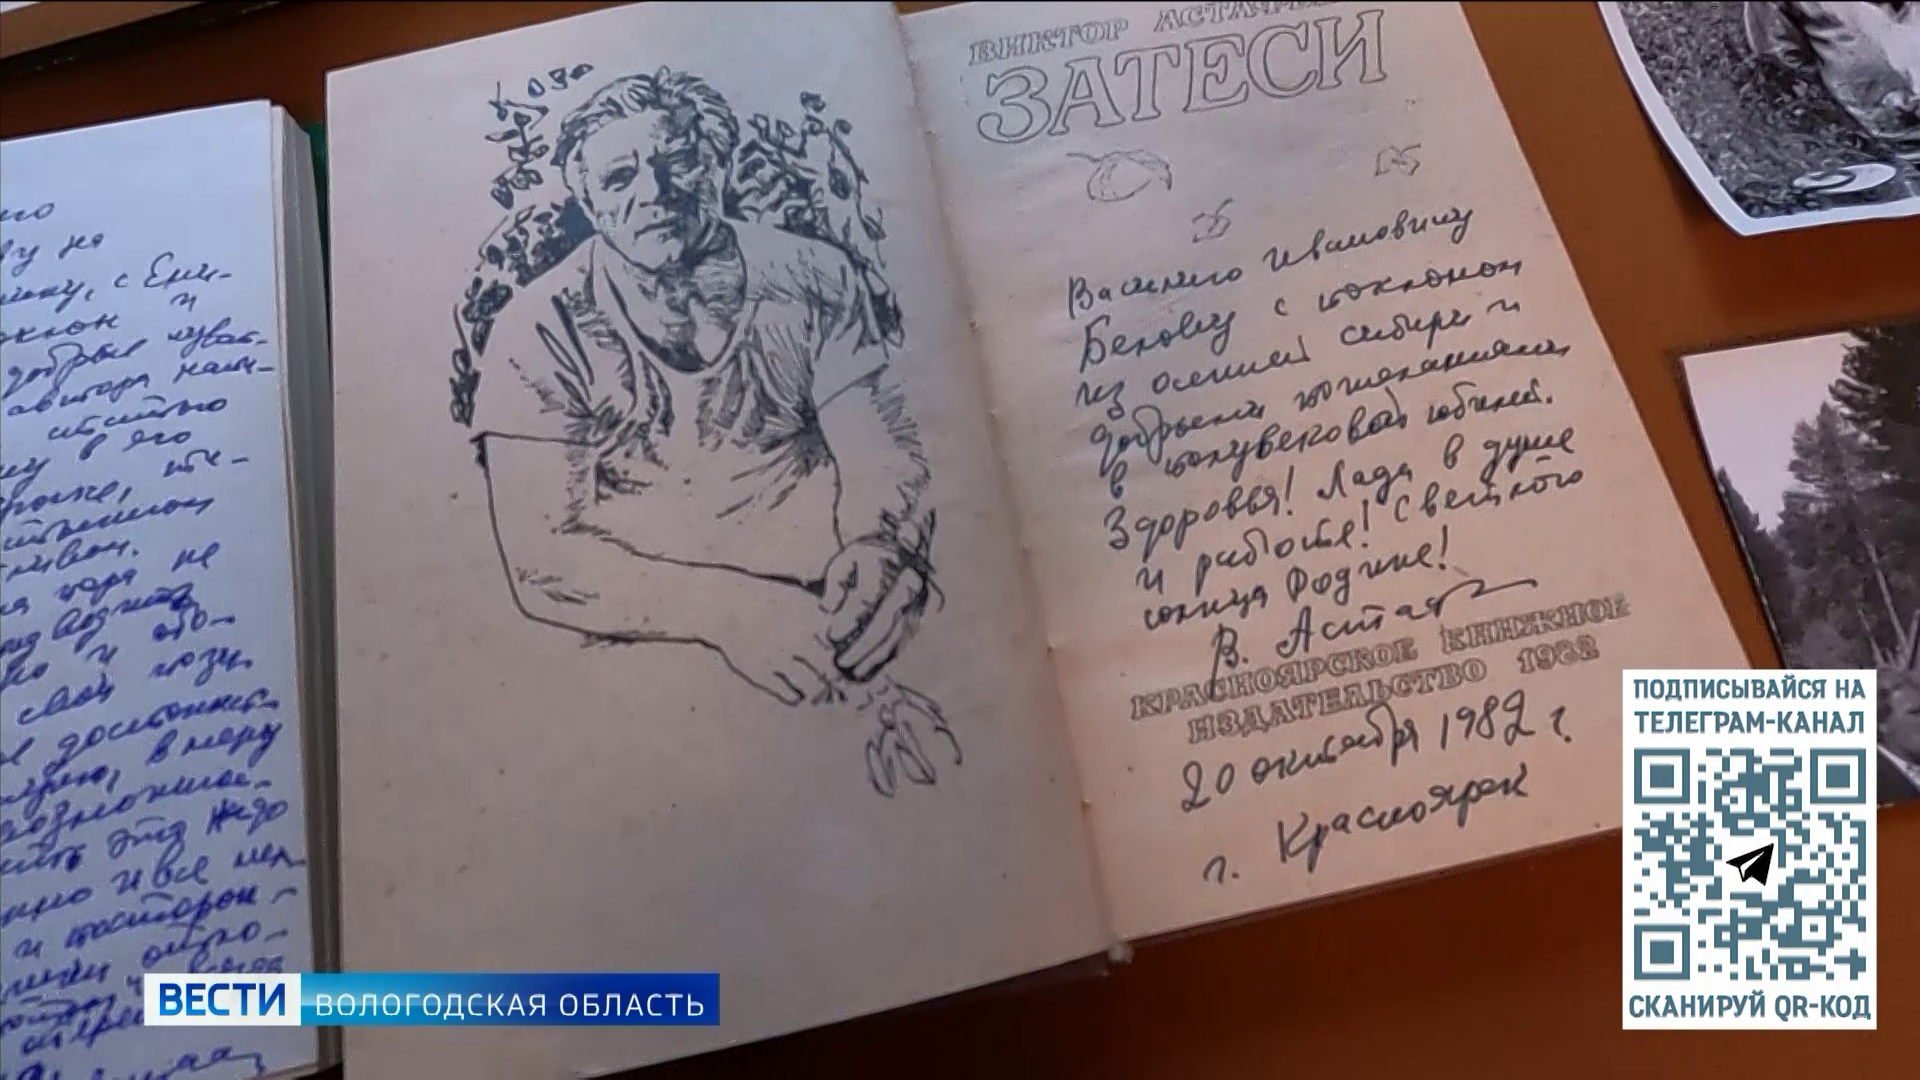 Литературное сообщество Вологодской области готовится к 100-летнему юбилею Виктора Астафьева